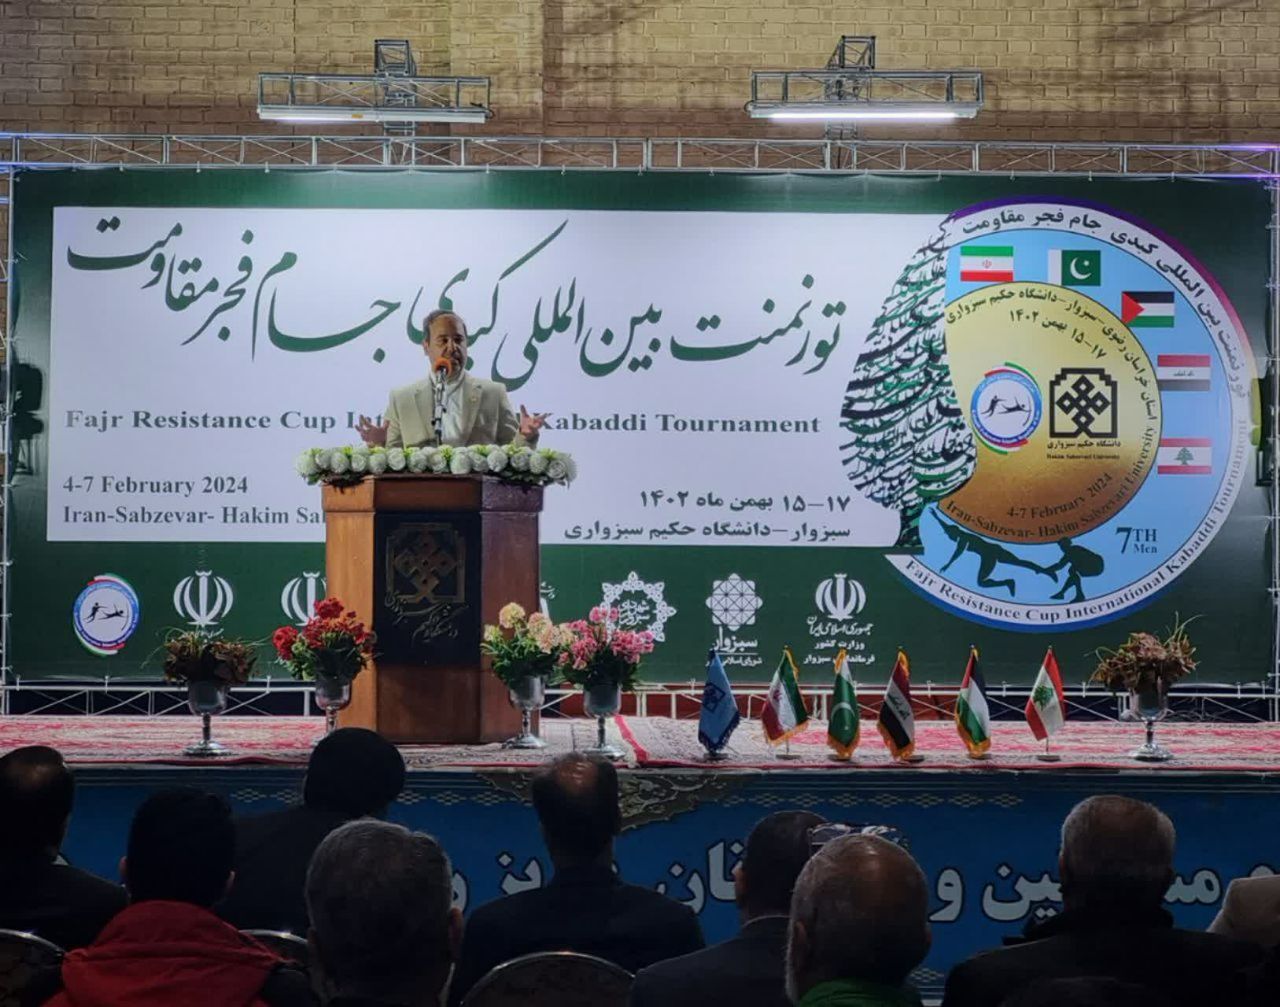 دانشگاه حکیم سبزواری، اولین دانشگاه کشور در پیشبرد تخصصی ورزش کبدی در ایران